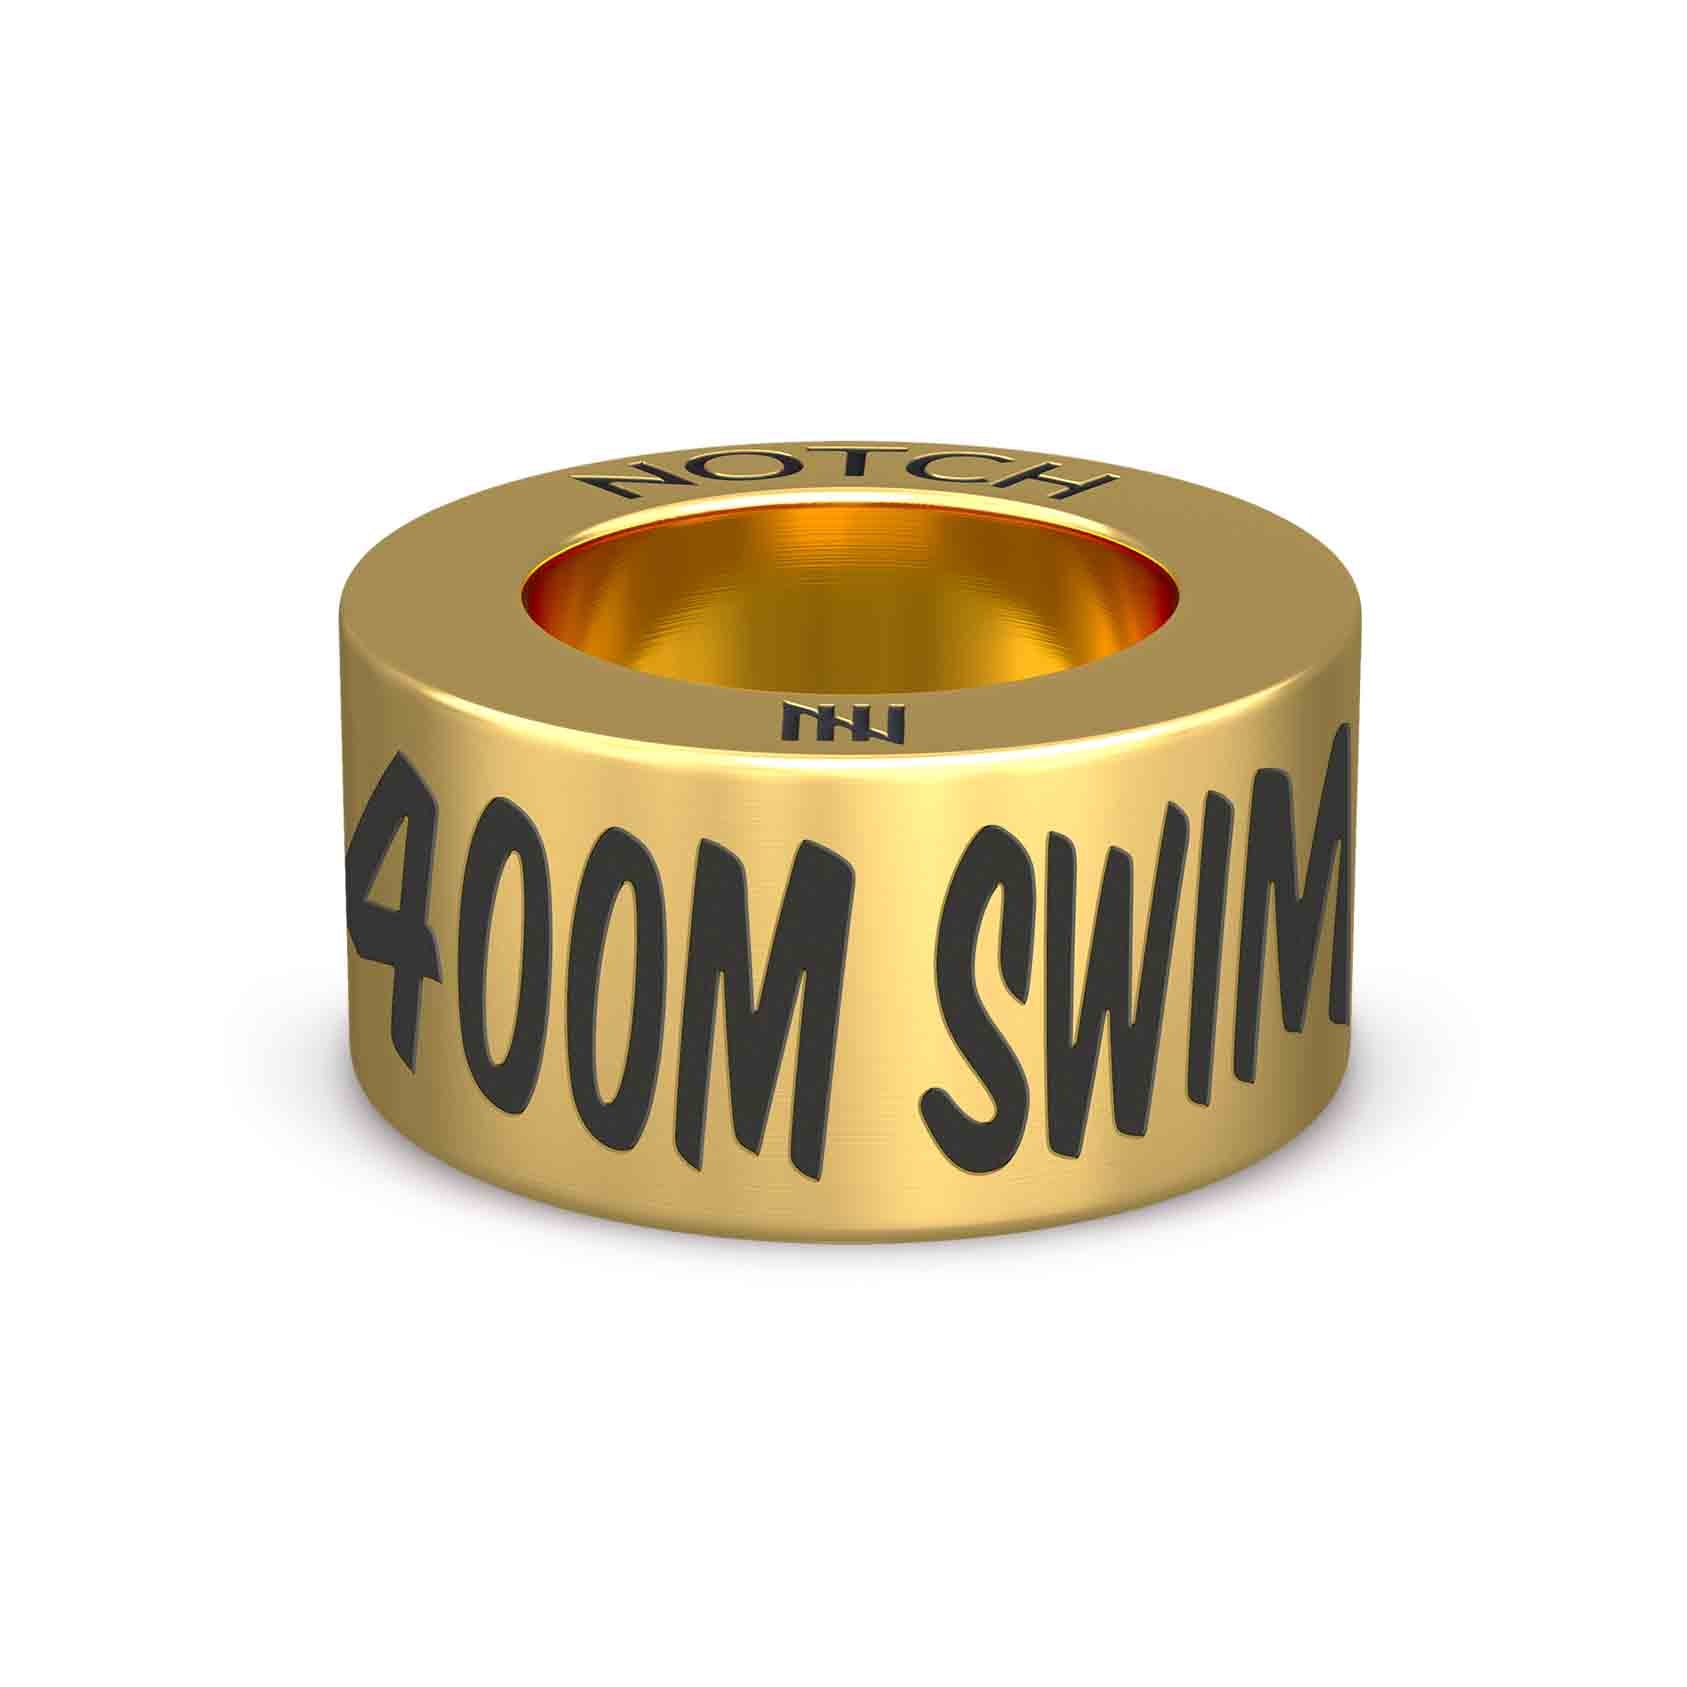 400m Swim NOTCH Charm